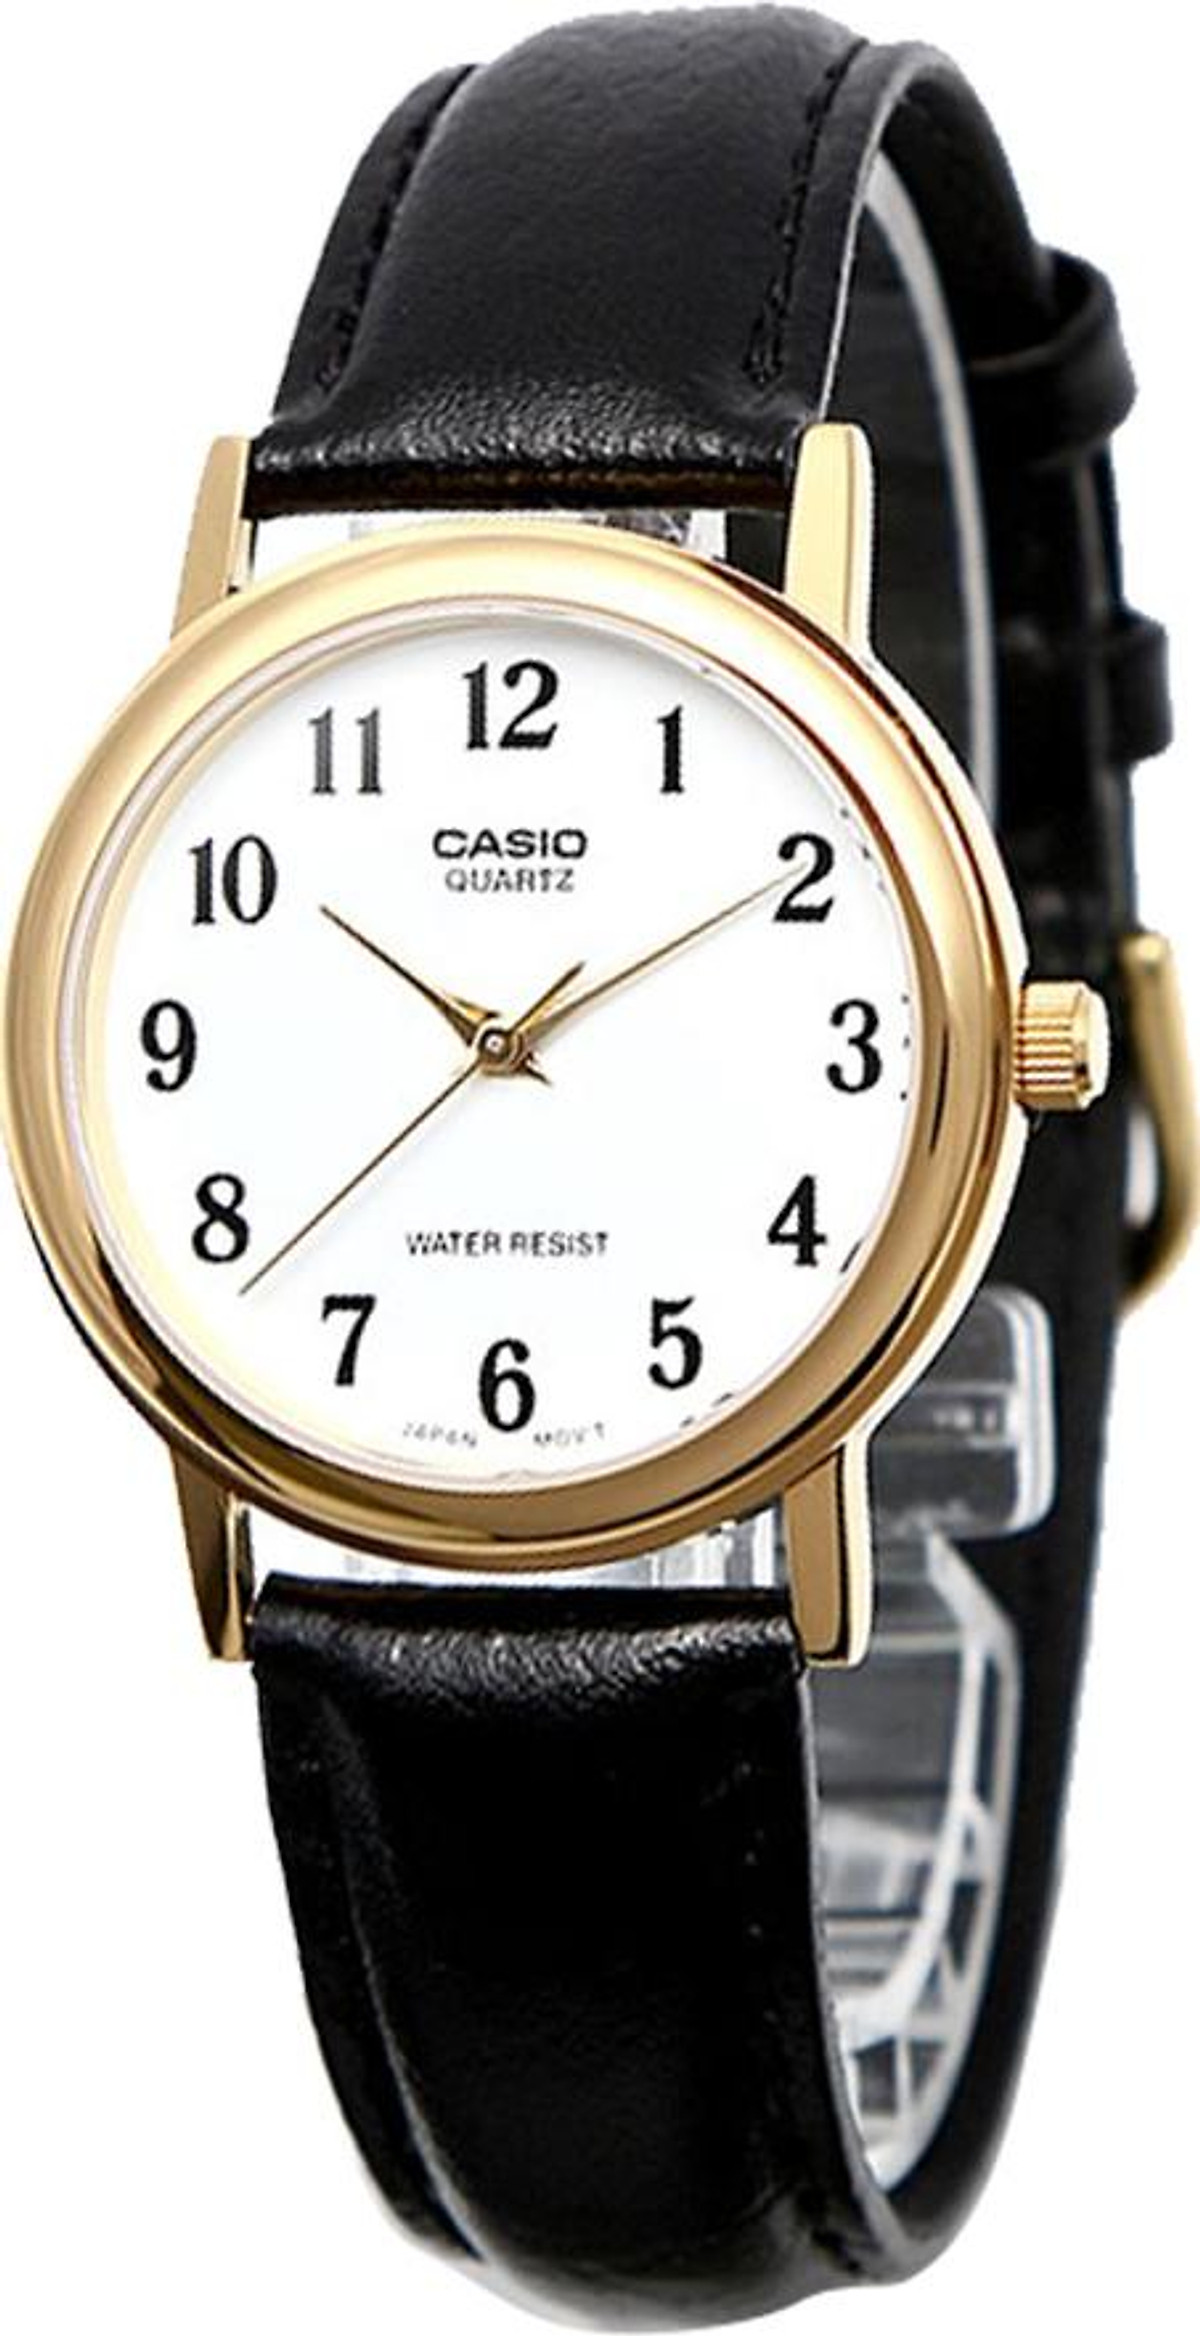 Khám phá đồng hồ Casio MTP-1095Q-7B